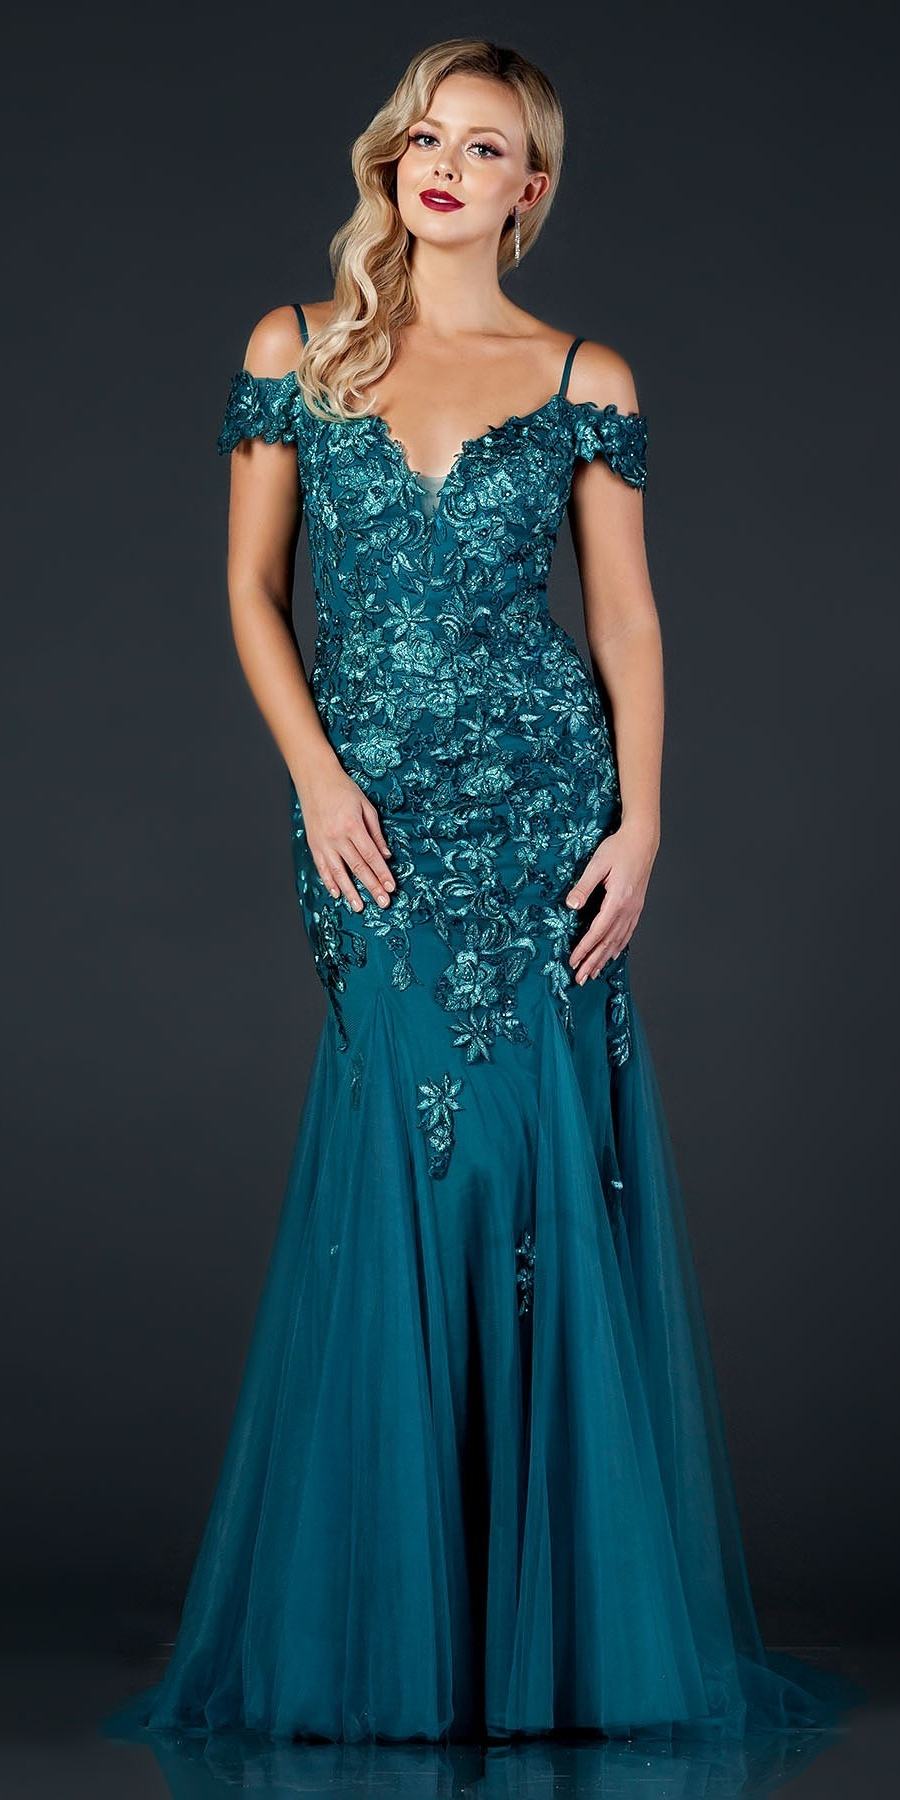 Aspeed Design L2170 Cold-Shoulder Appliqued Long Prom Dress Teal